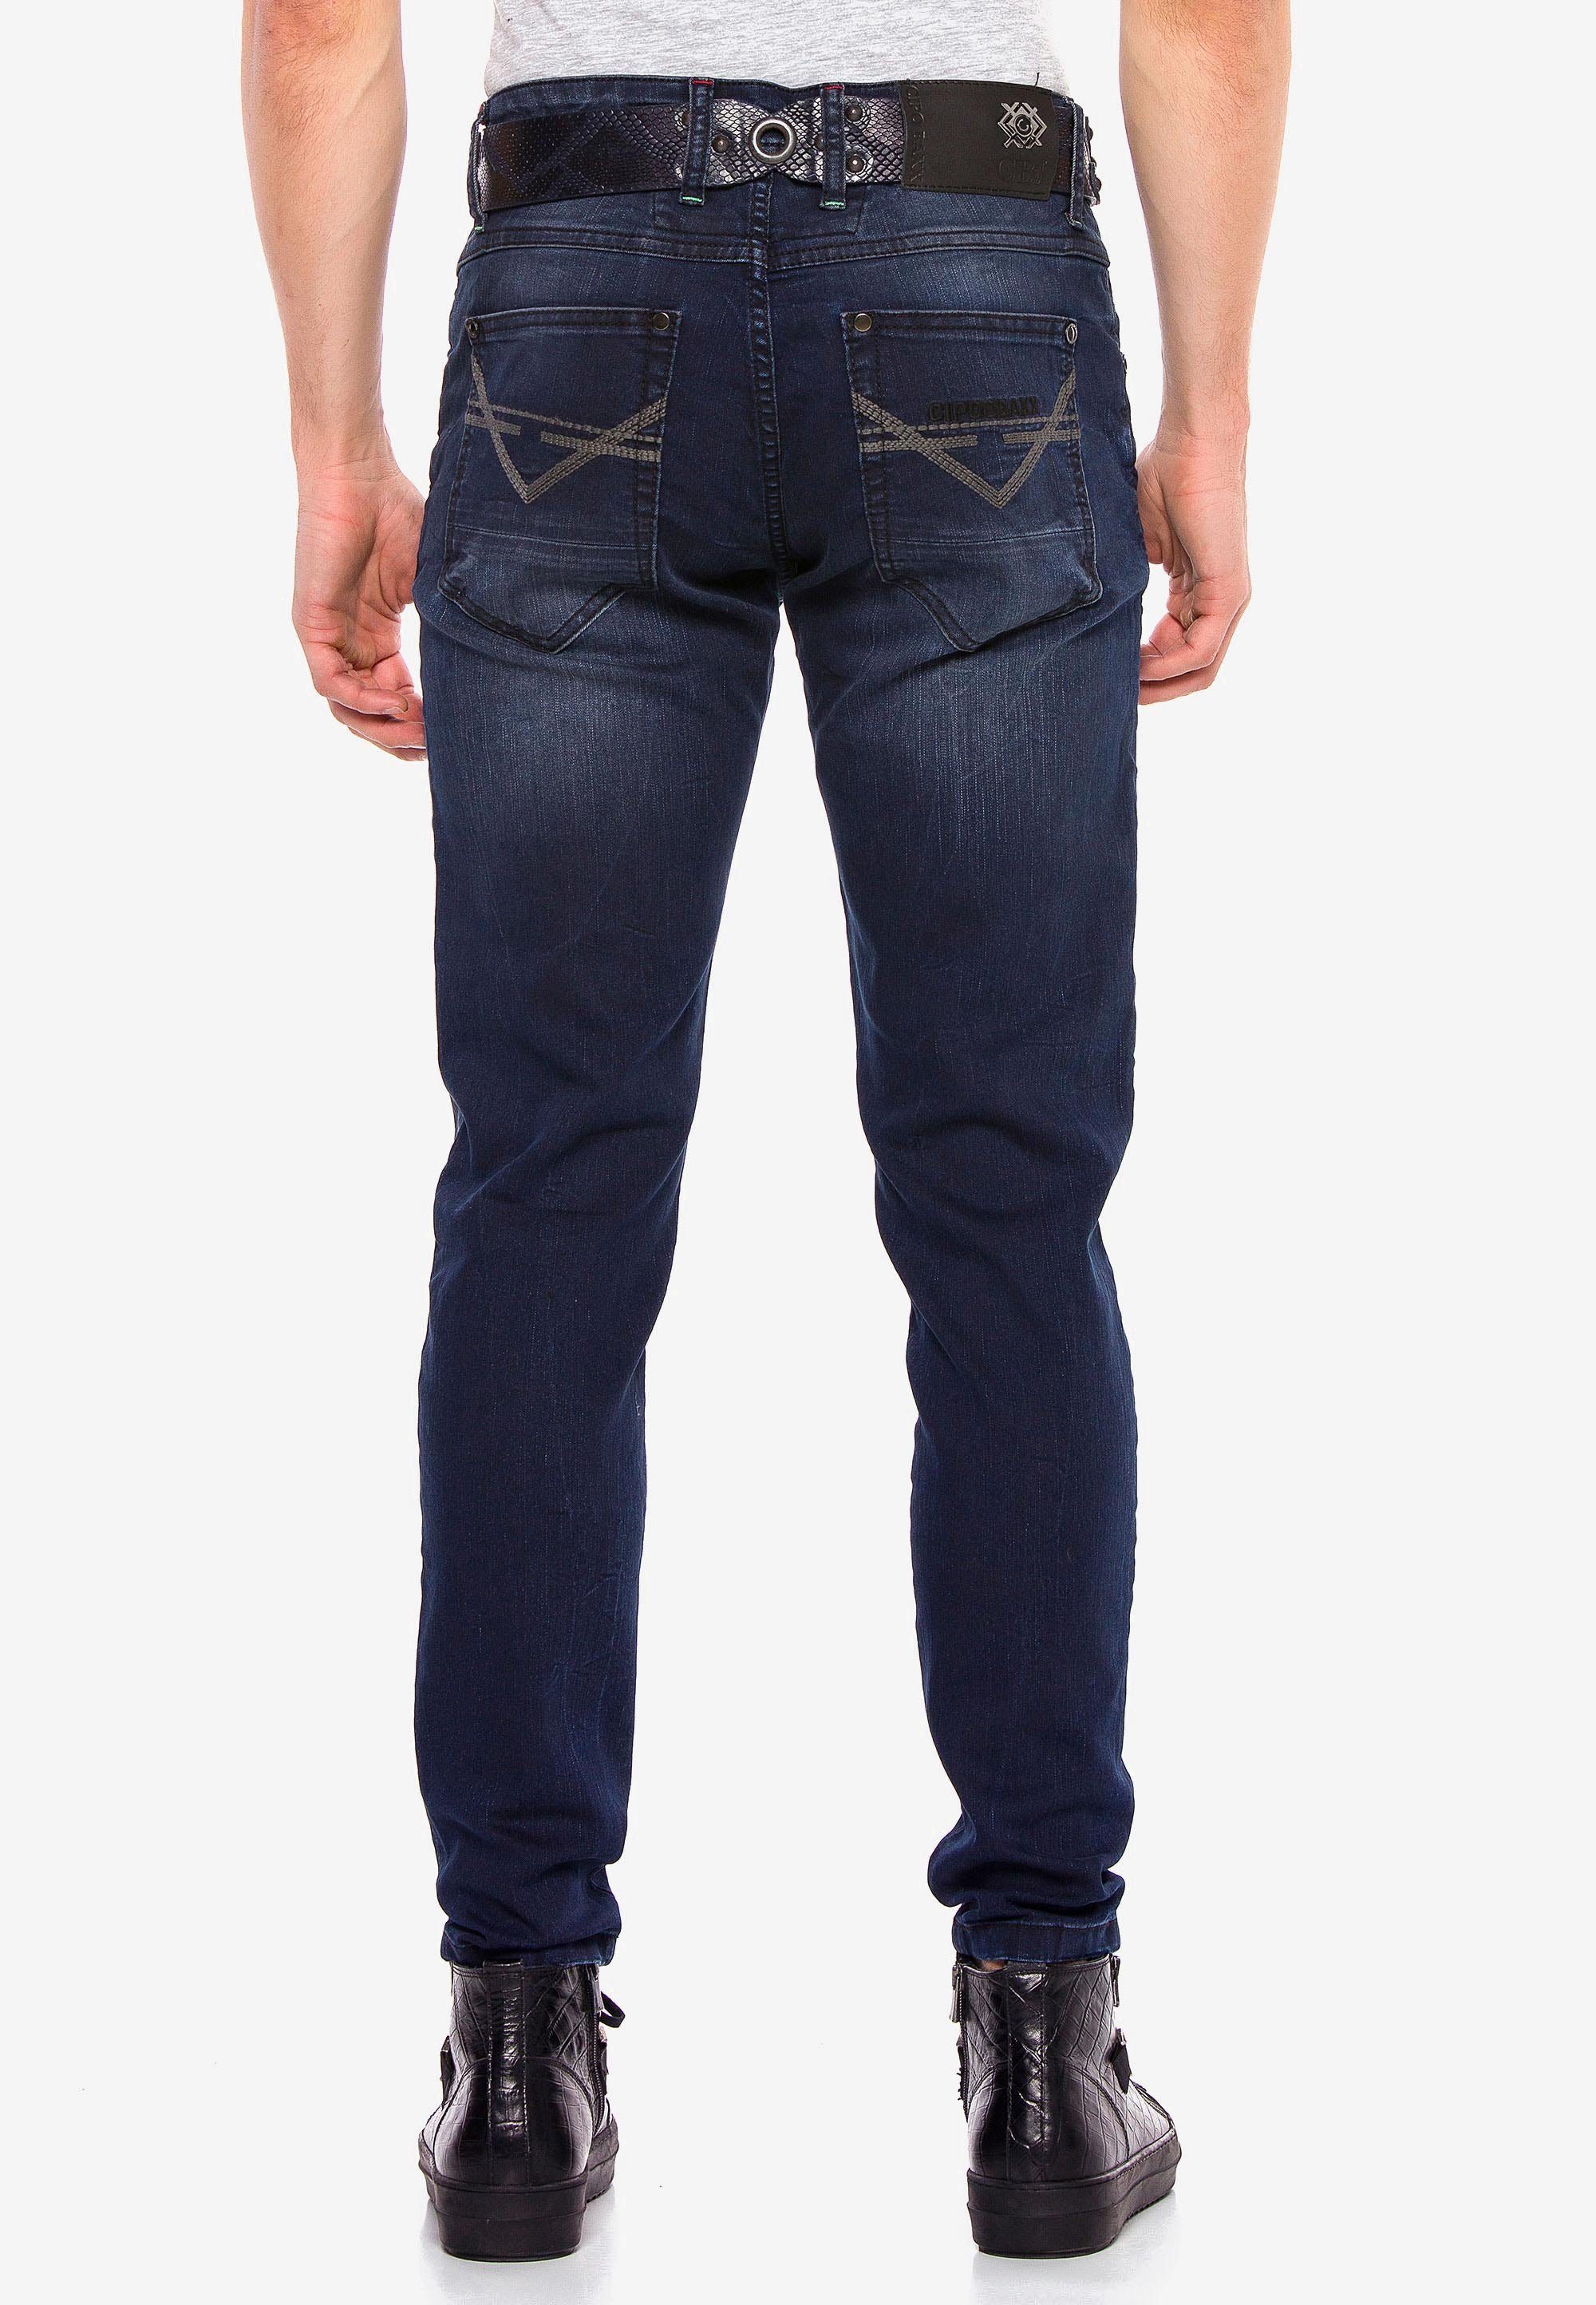 Baxx & Slim-Fit Slim-fit-Jeans im Cipo Schnitt